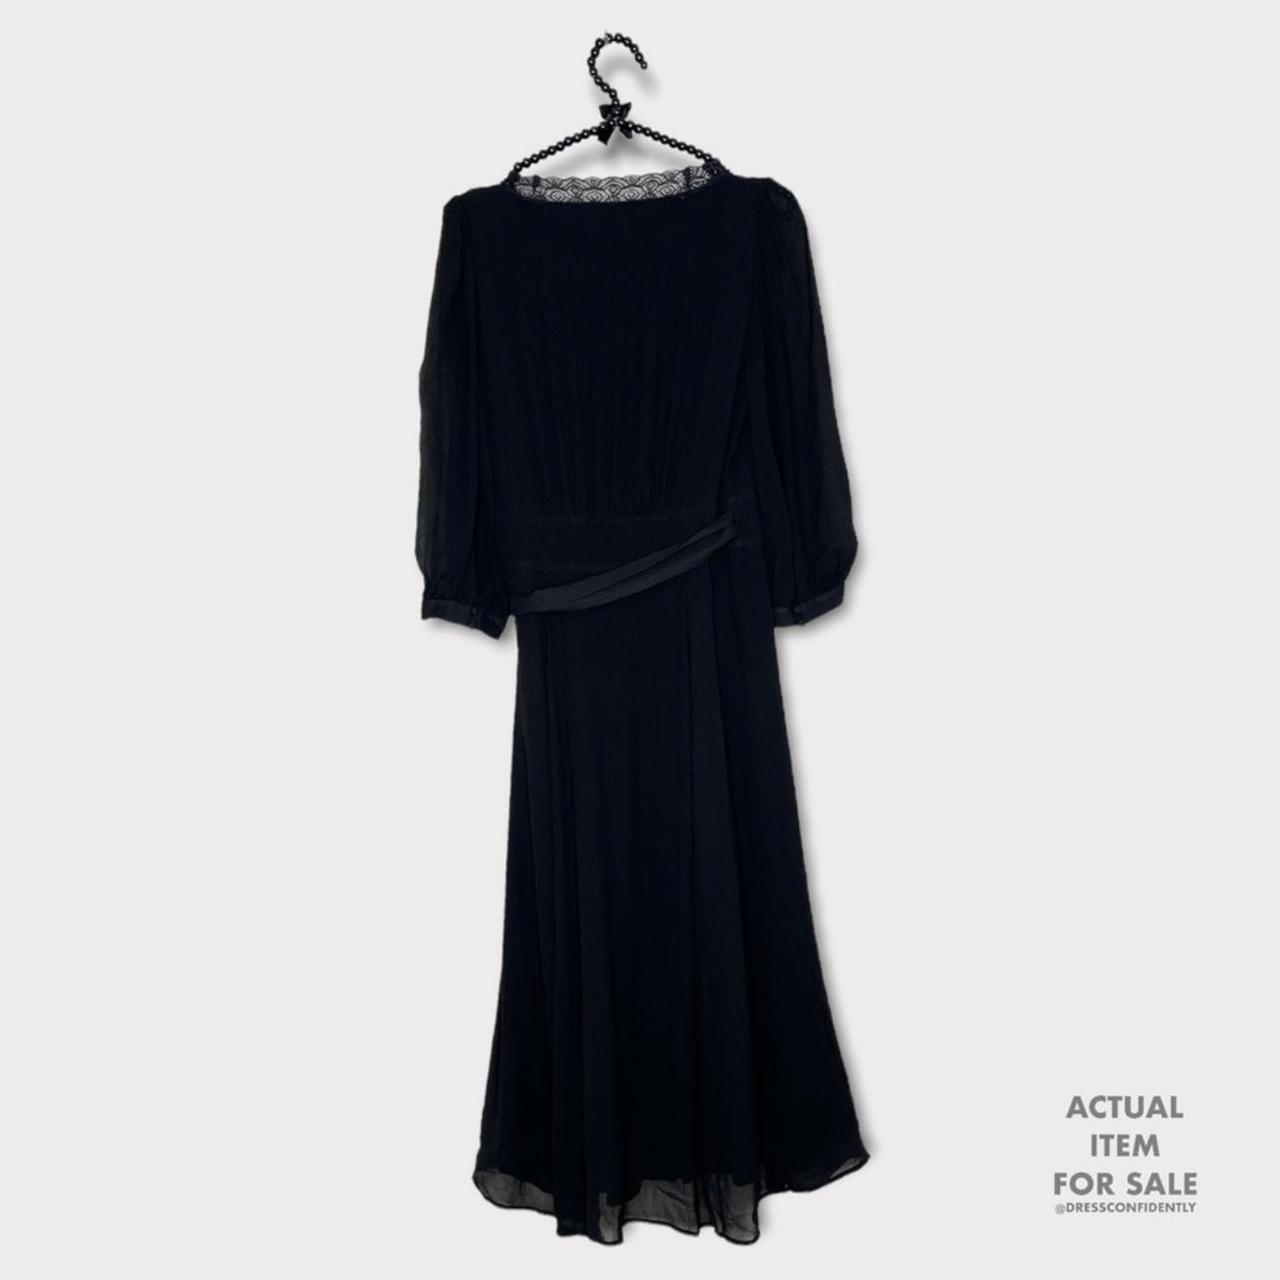 Sézane Women's Black Dress (2)